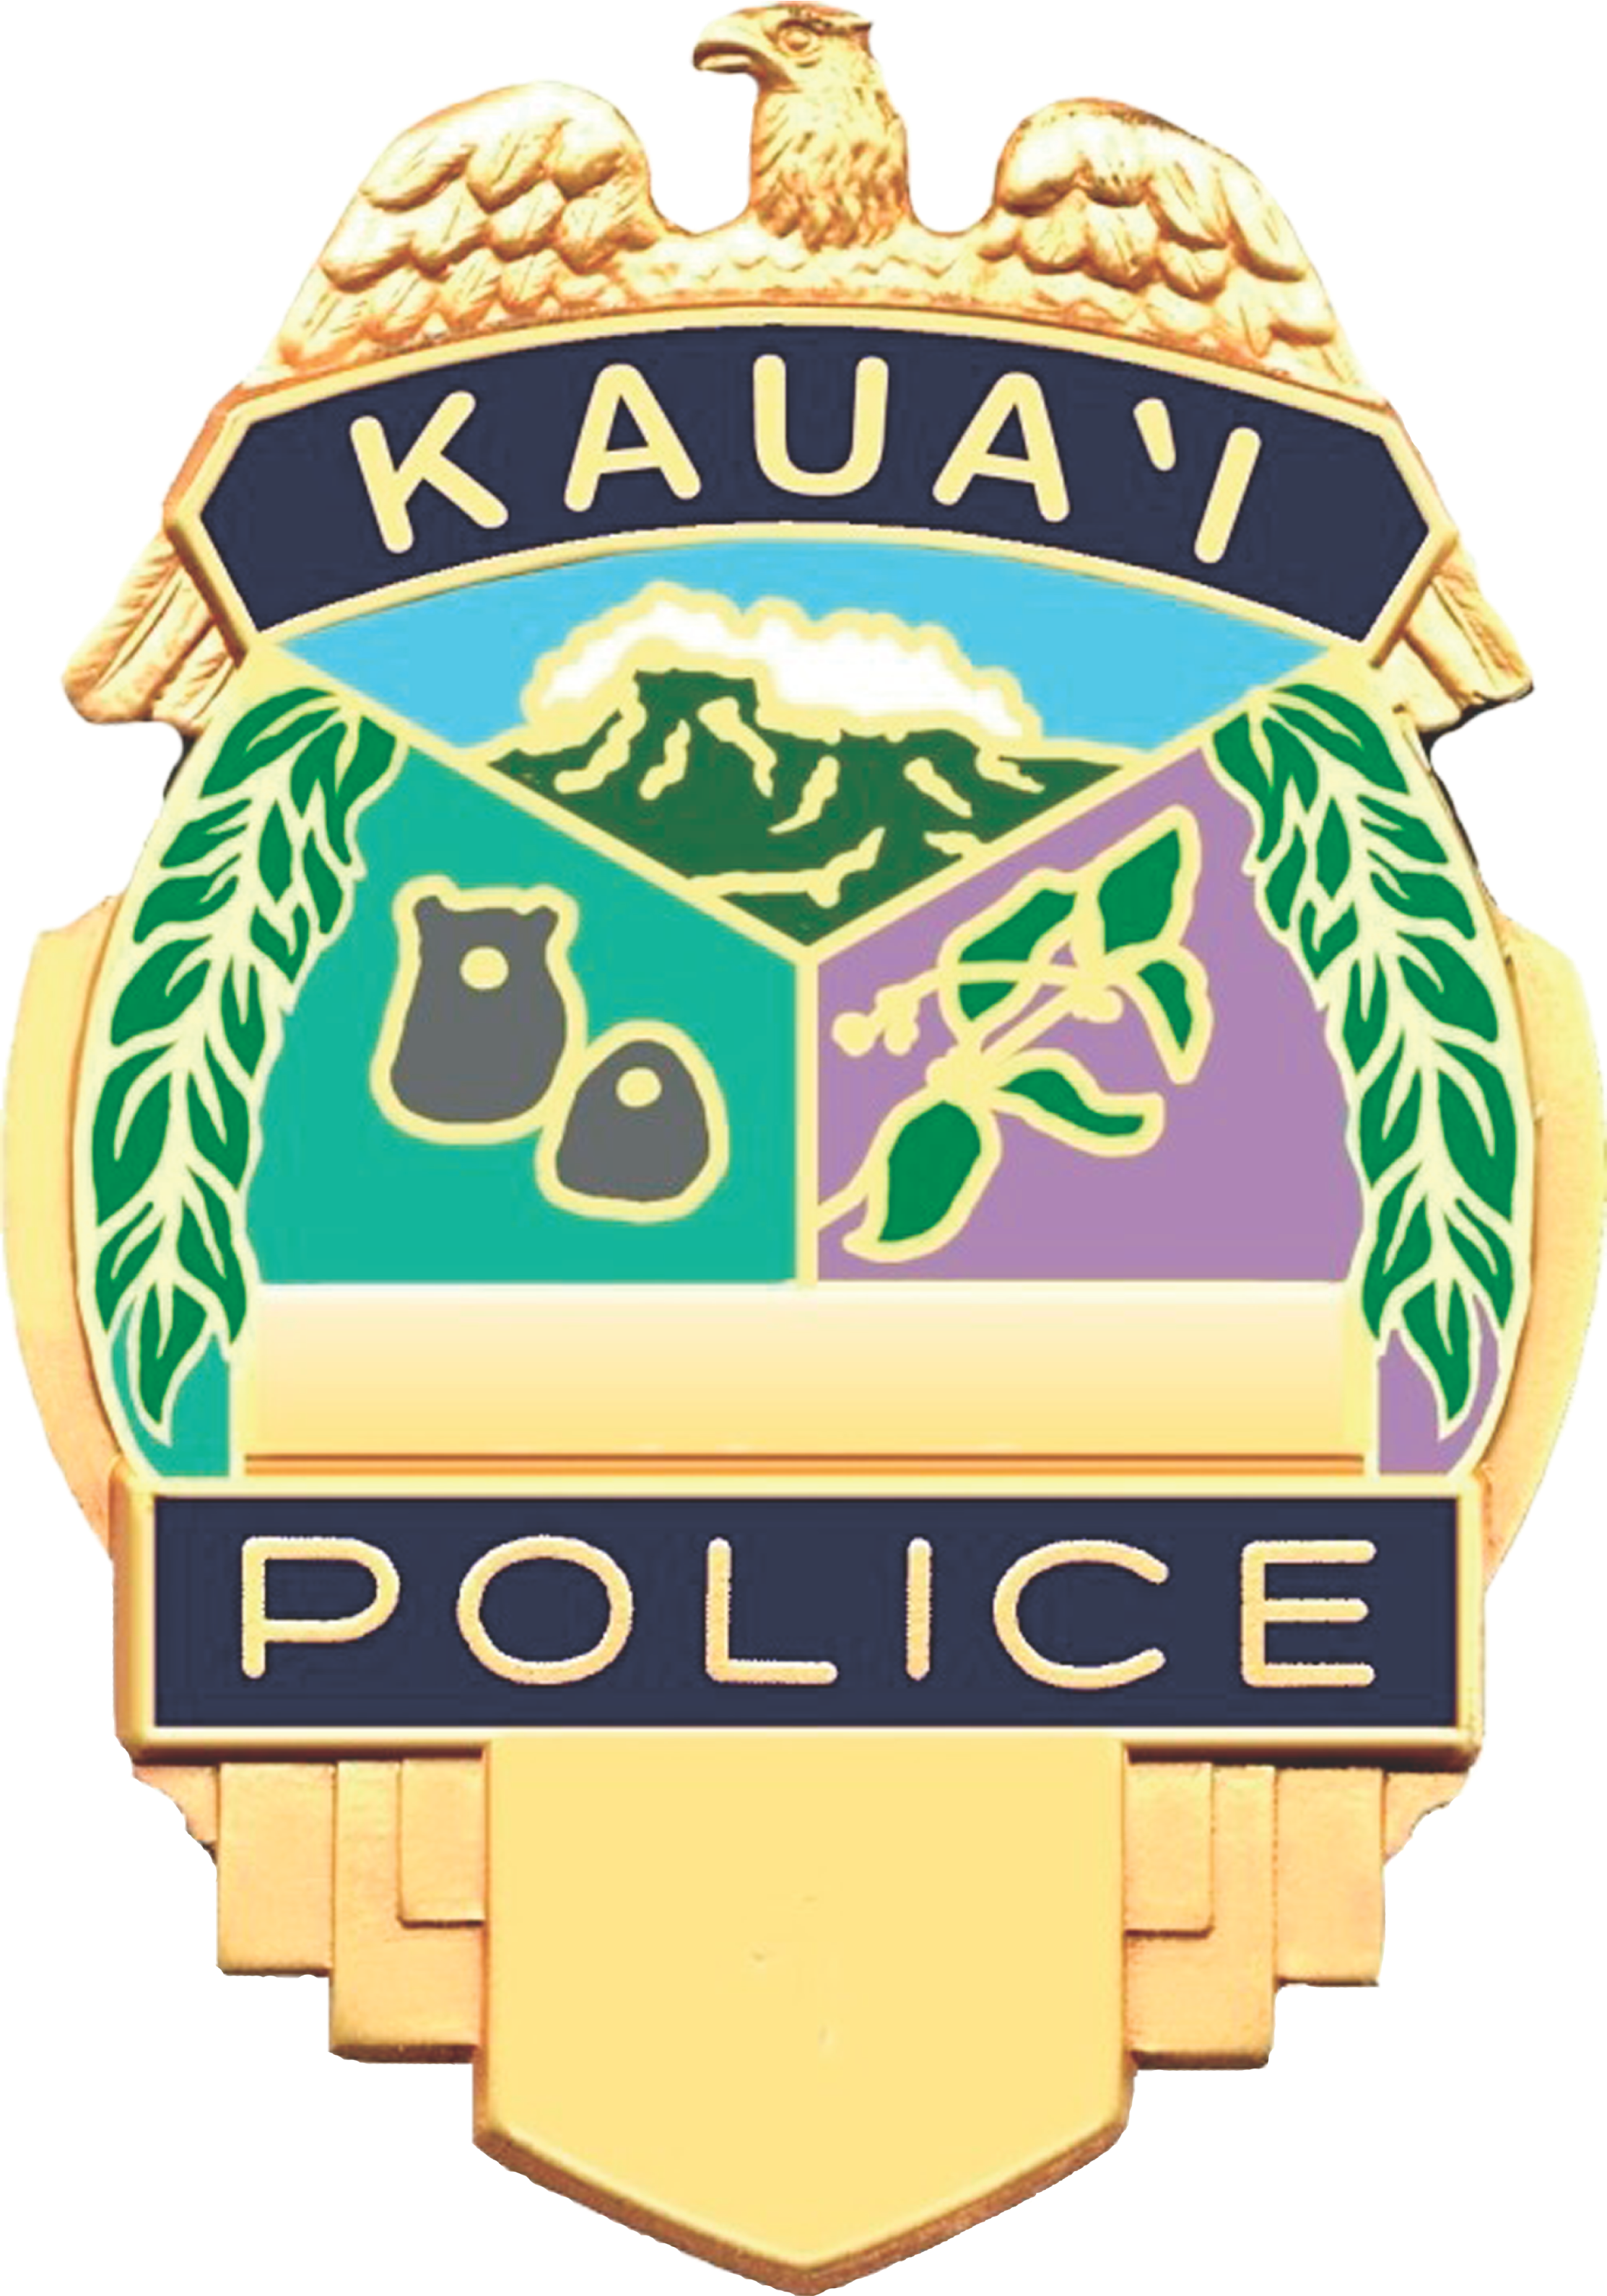 Kauai Police Department 